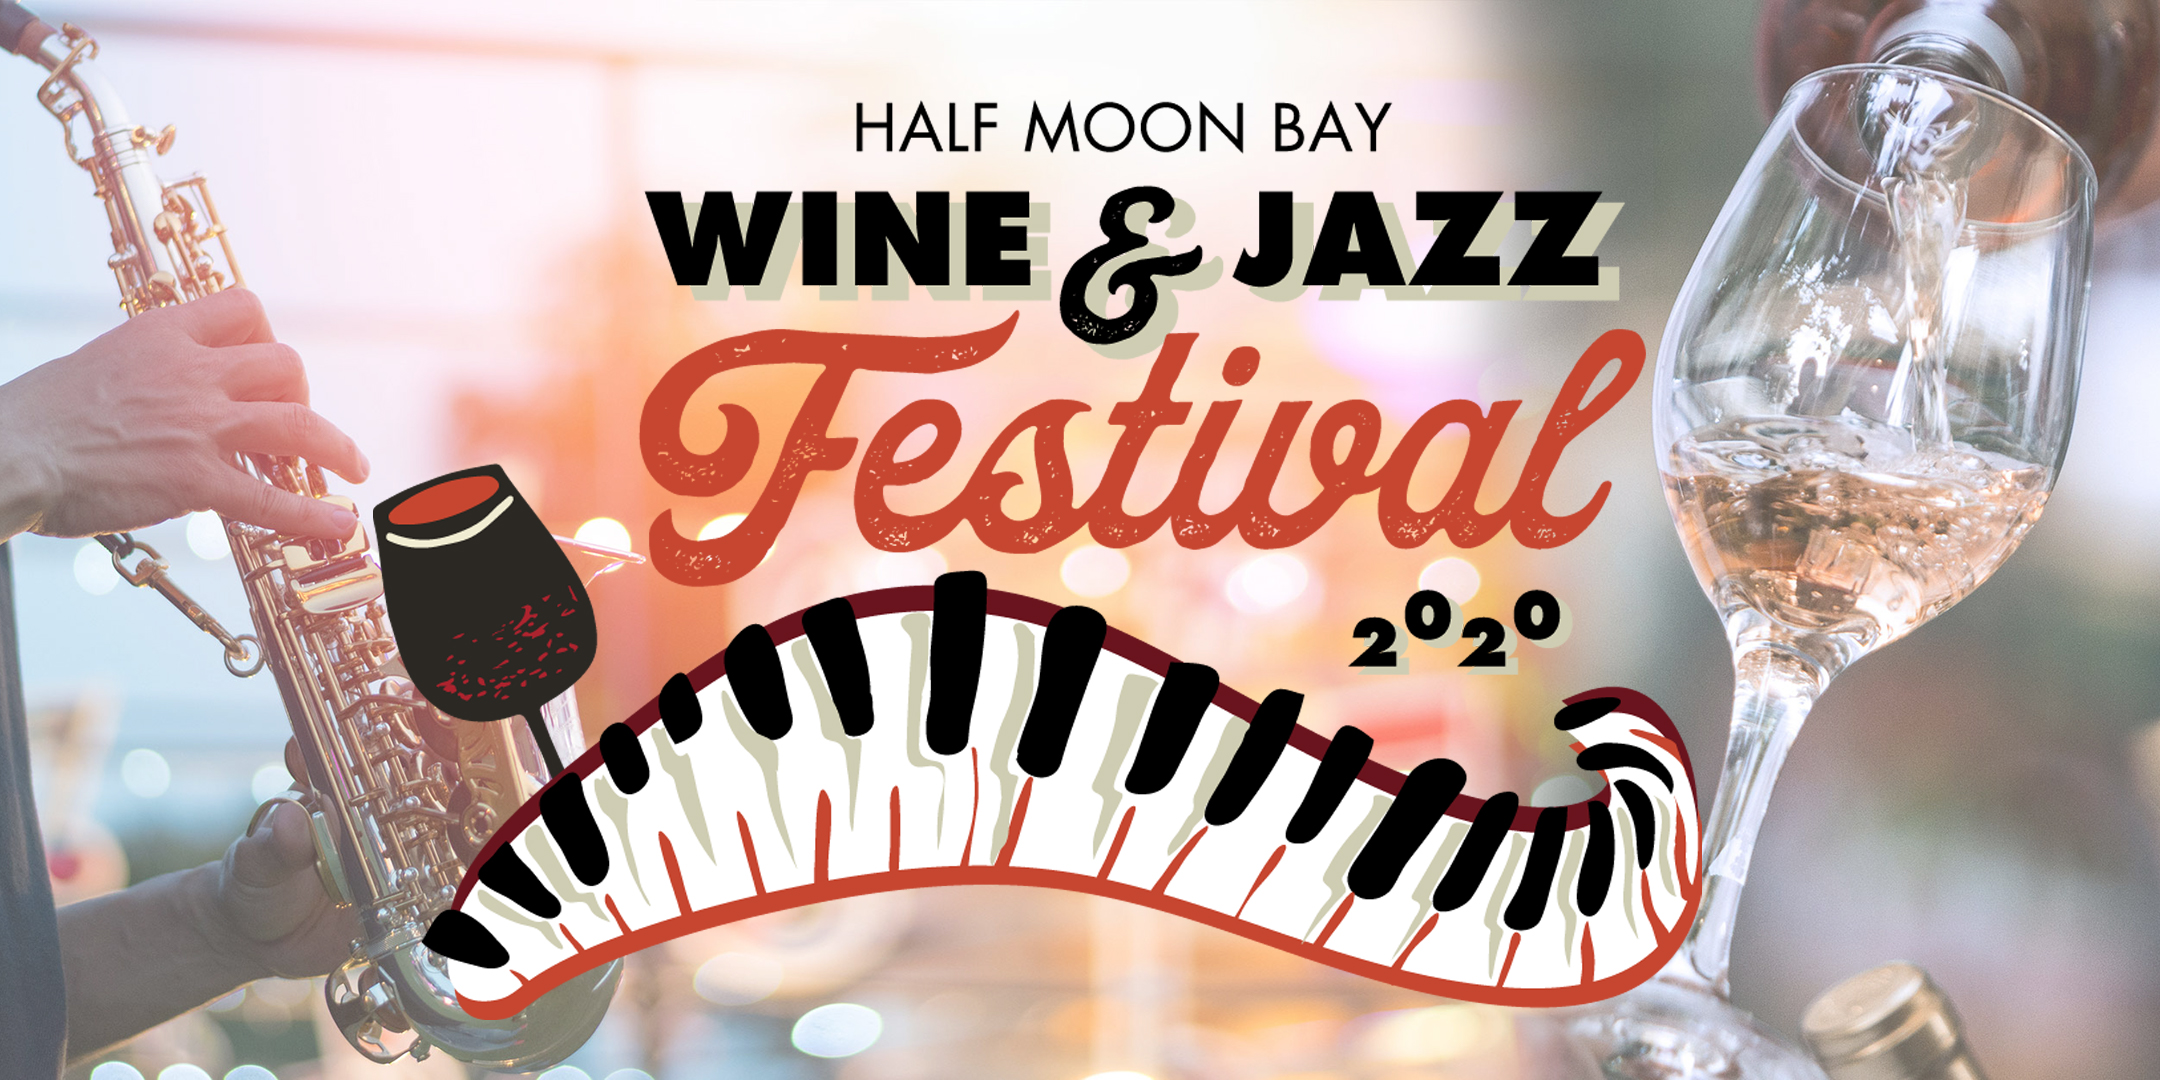 Half Moon Bay Wine & Jazz Festival May 23, 2020